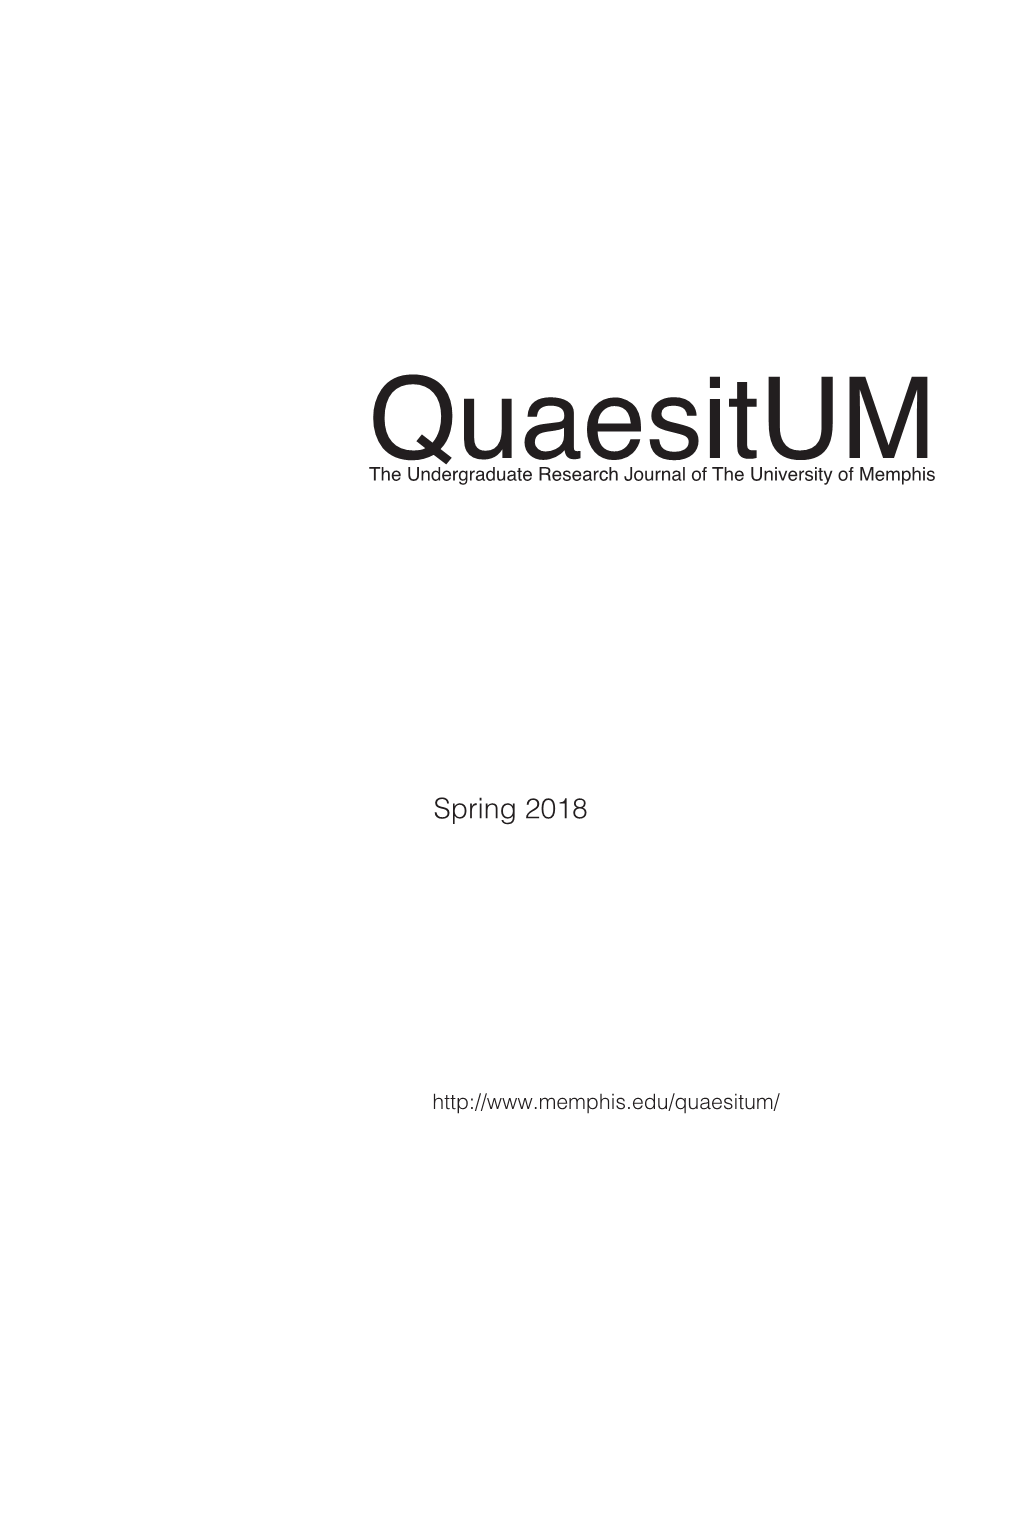 Quaesitum the Undergraduate Research Journal of the University of Memphis